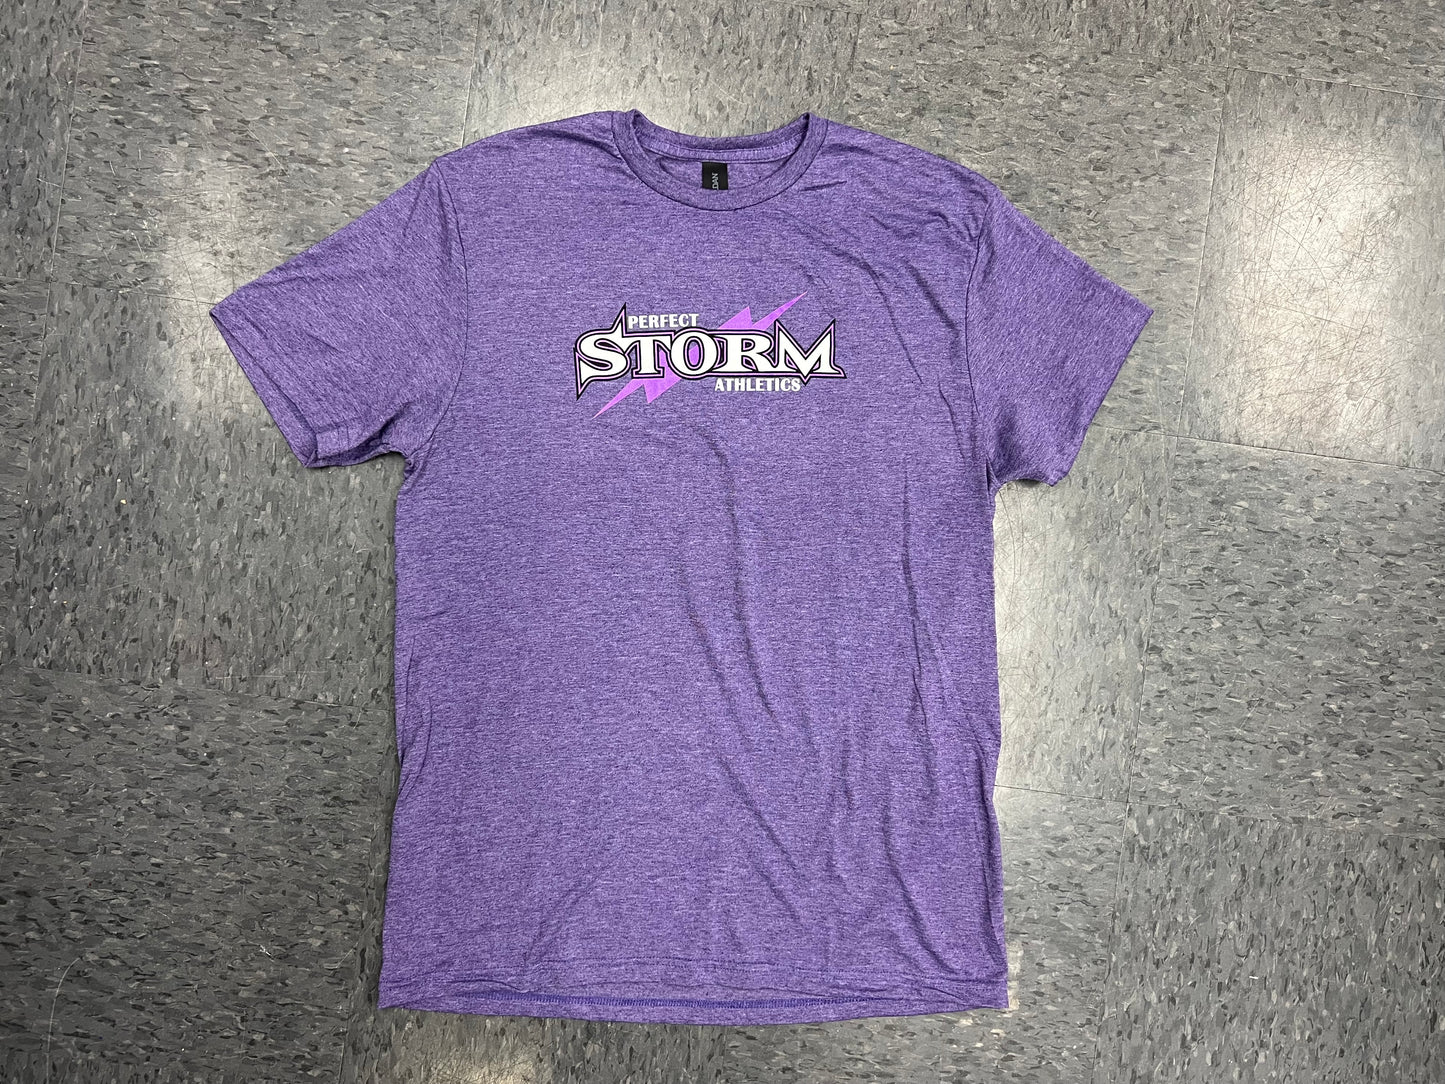 Heathered Purple T-Shirt - Unisex Adult Sizes